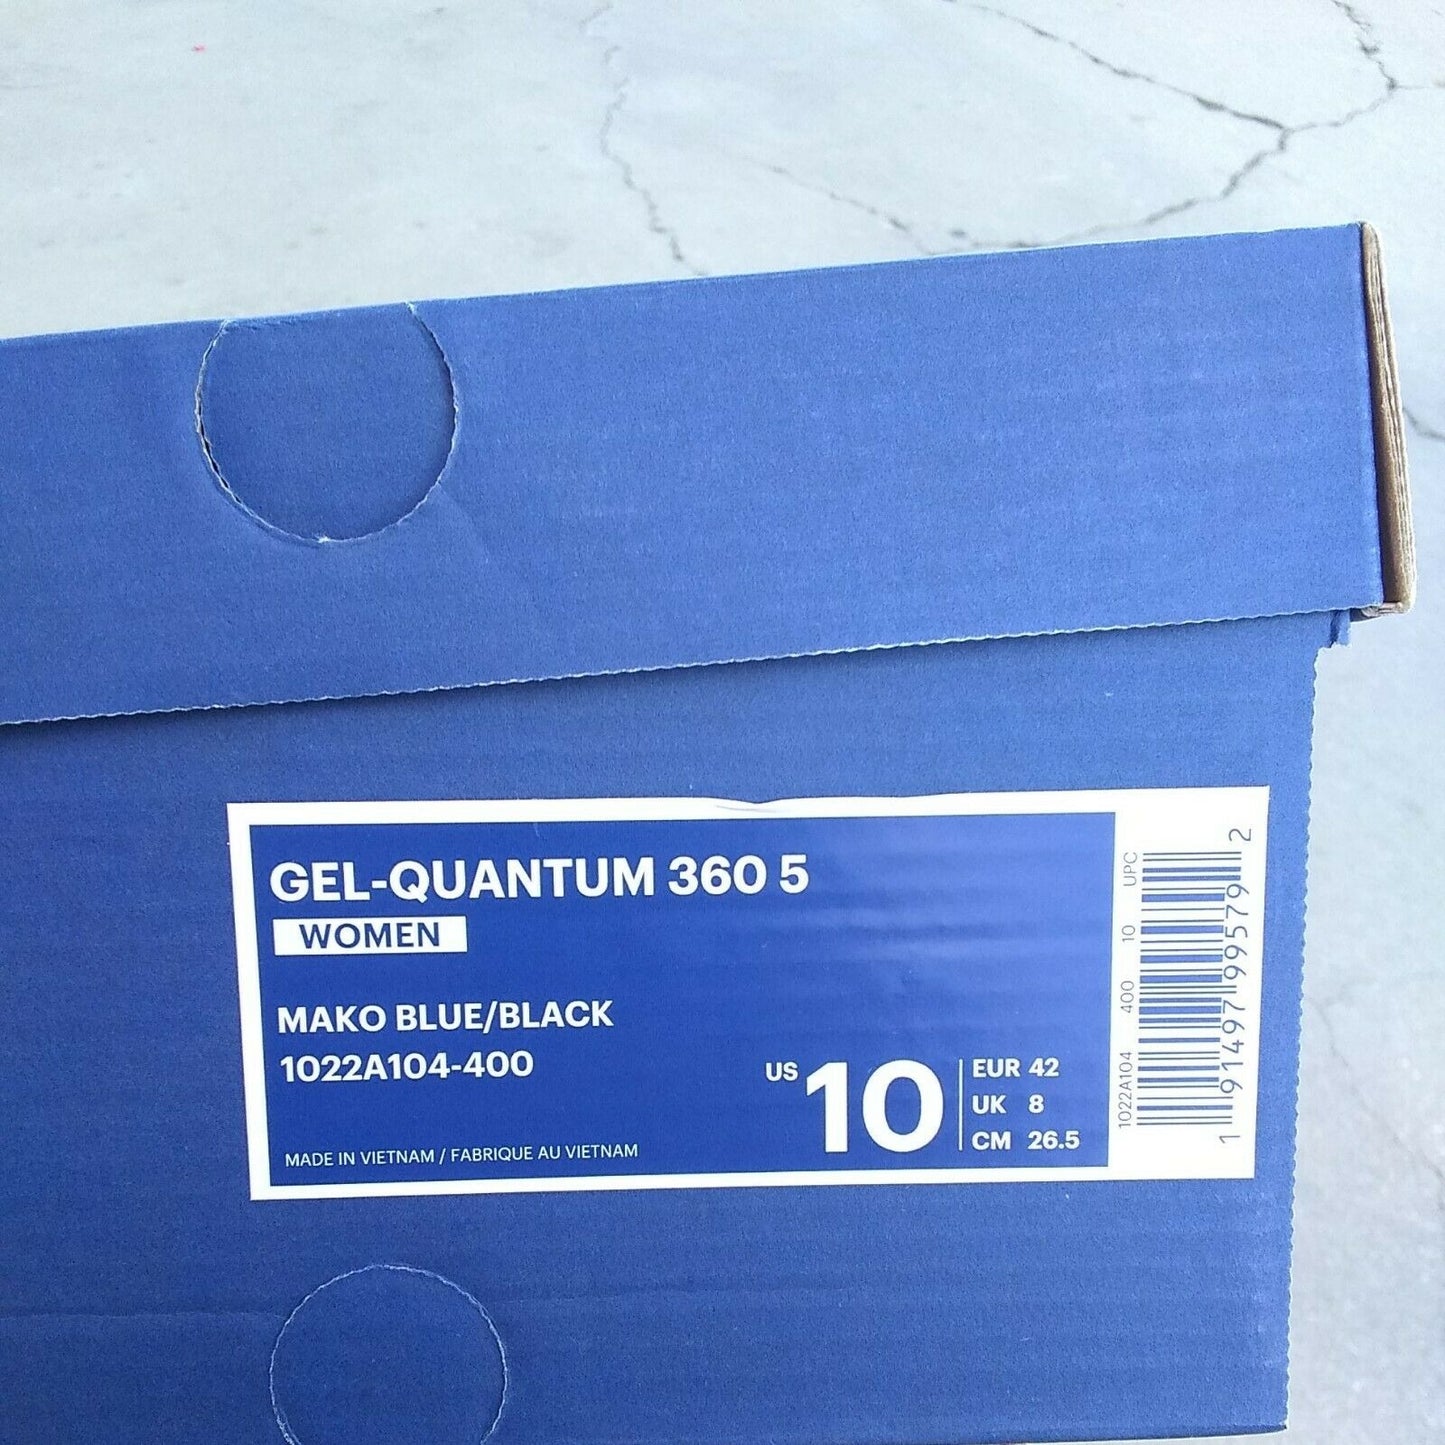 Asics woman"s gel quantum 360 5 mako blue running shoes size 10 US